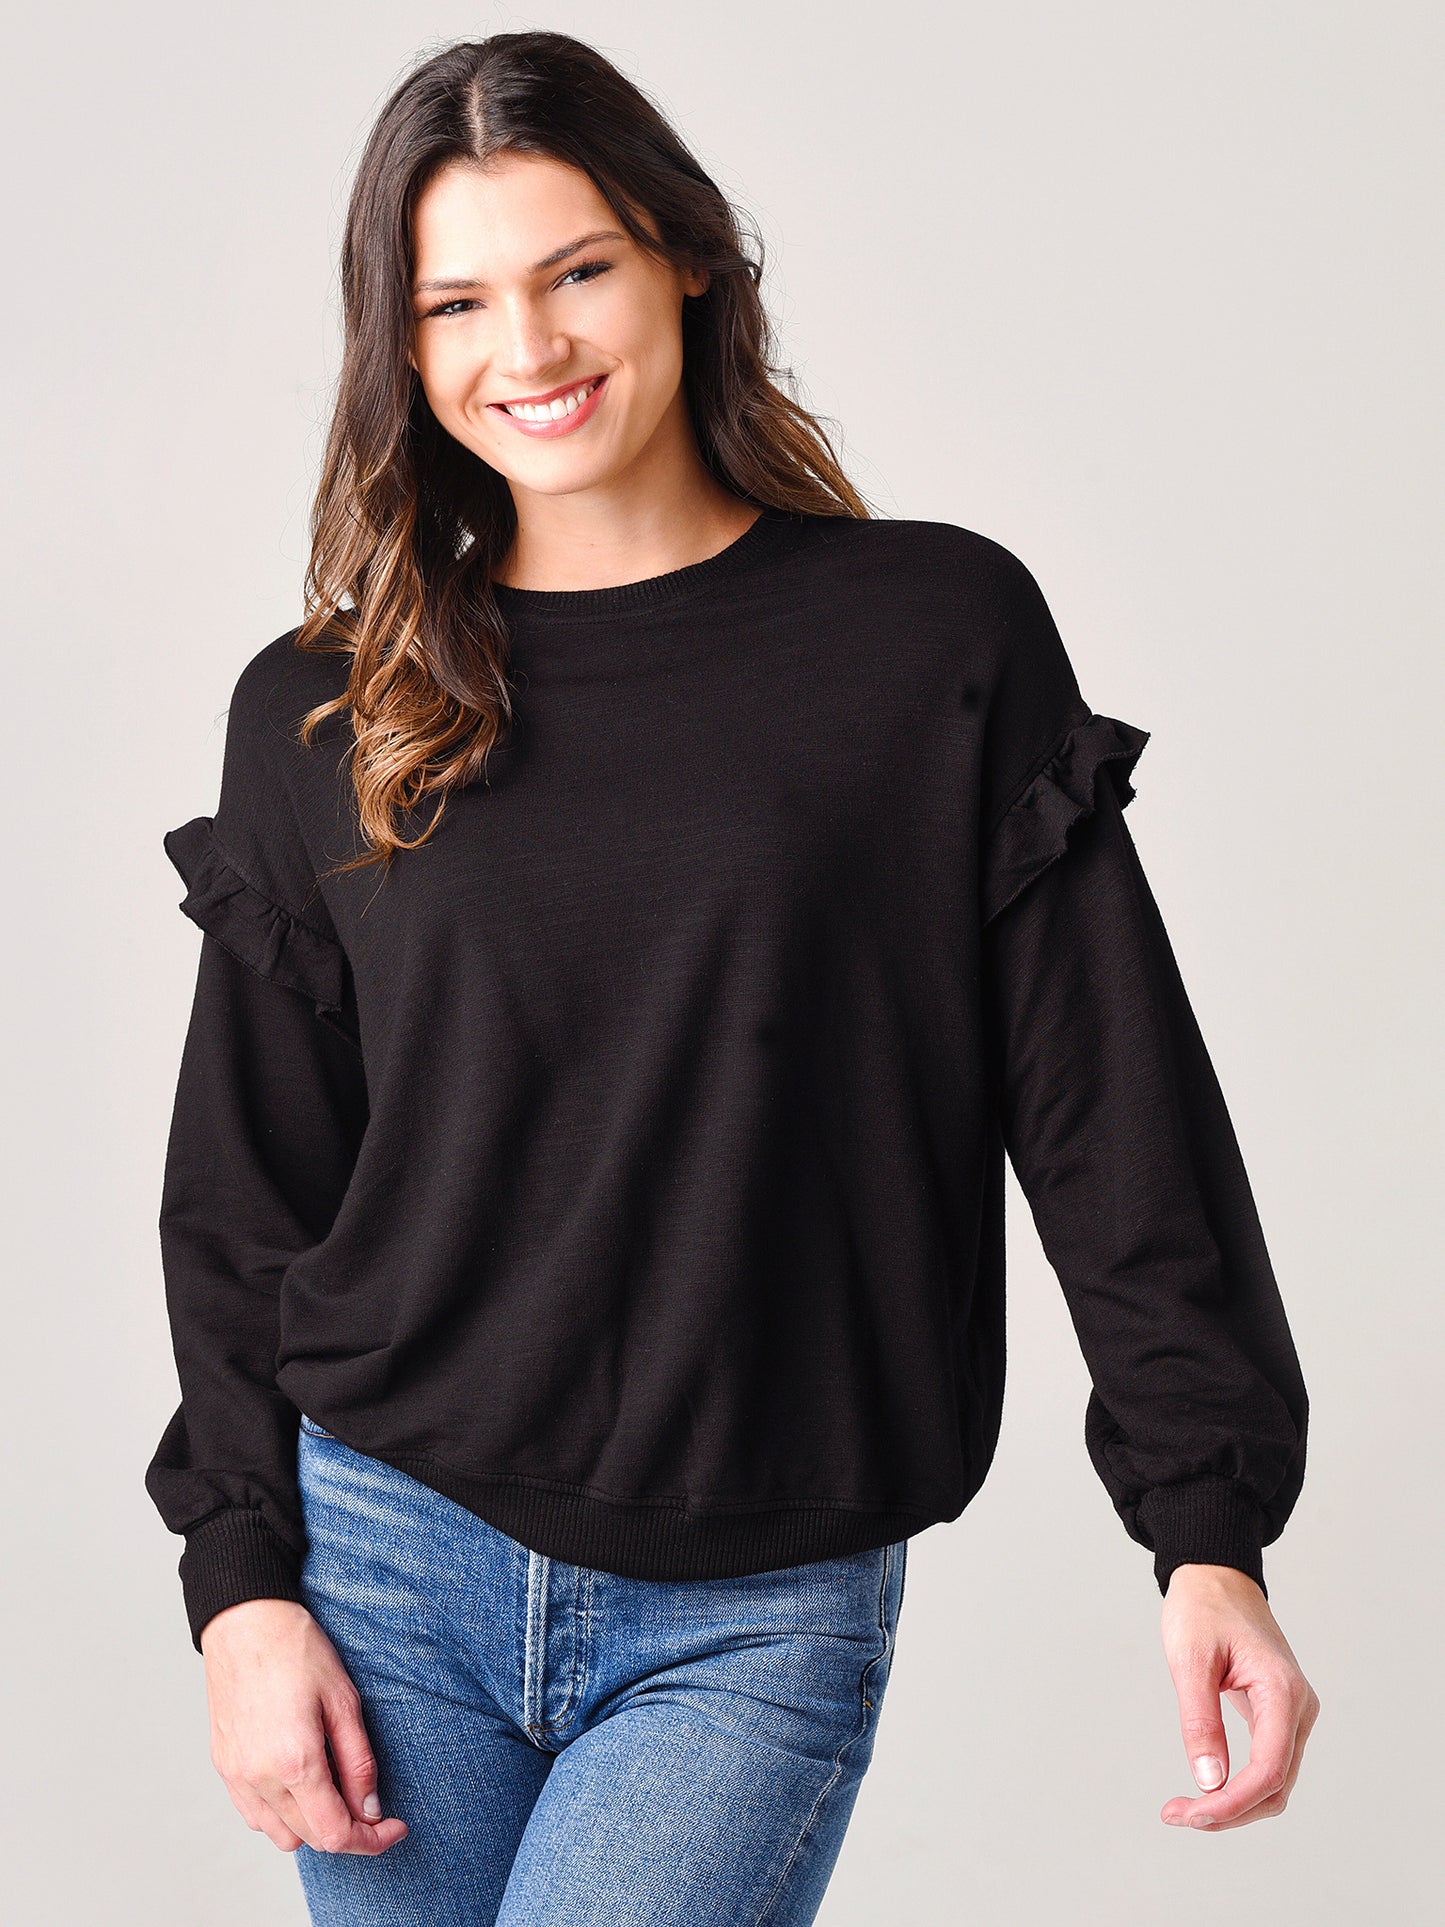 Monrow Women's Super Soft Sweatshirt With Ruffle Insert